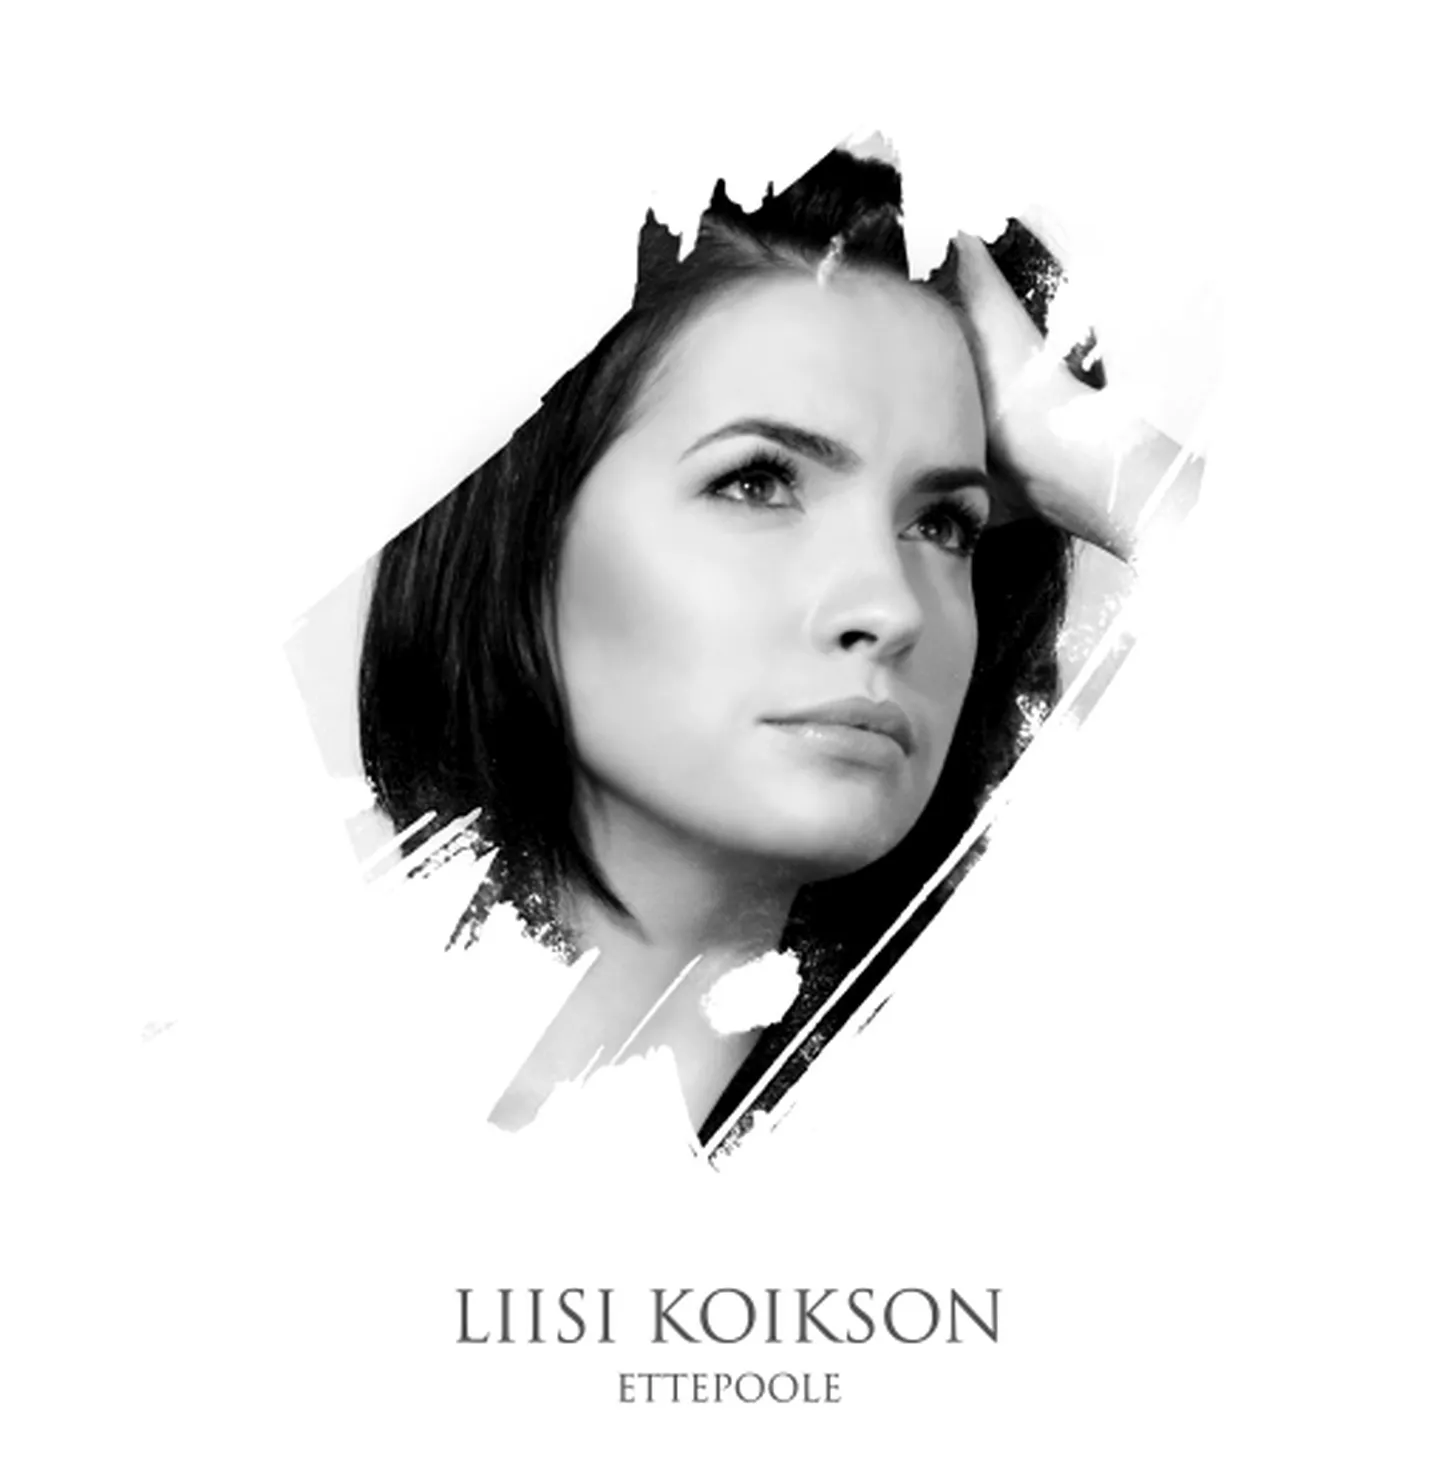 Liisi Koiksoni 2010. aasta lõpus ilmunud album «Ettepoole».